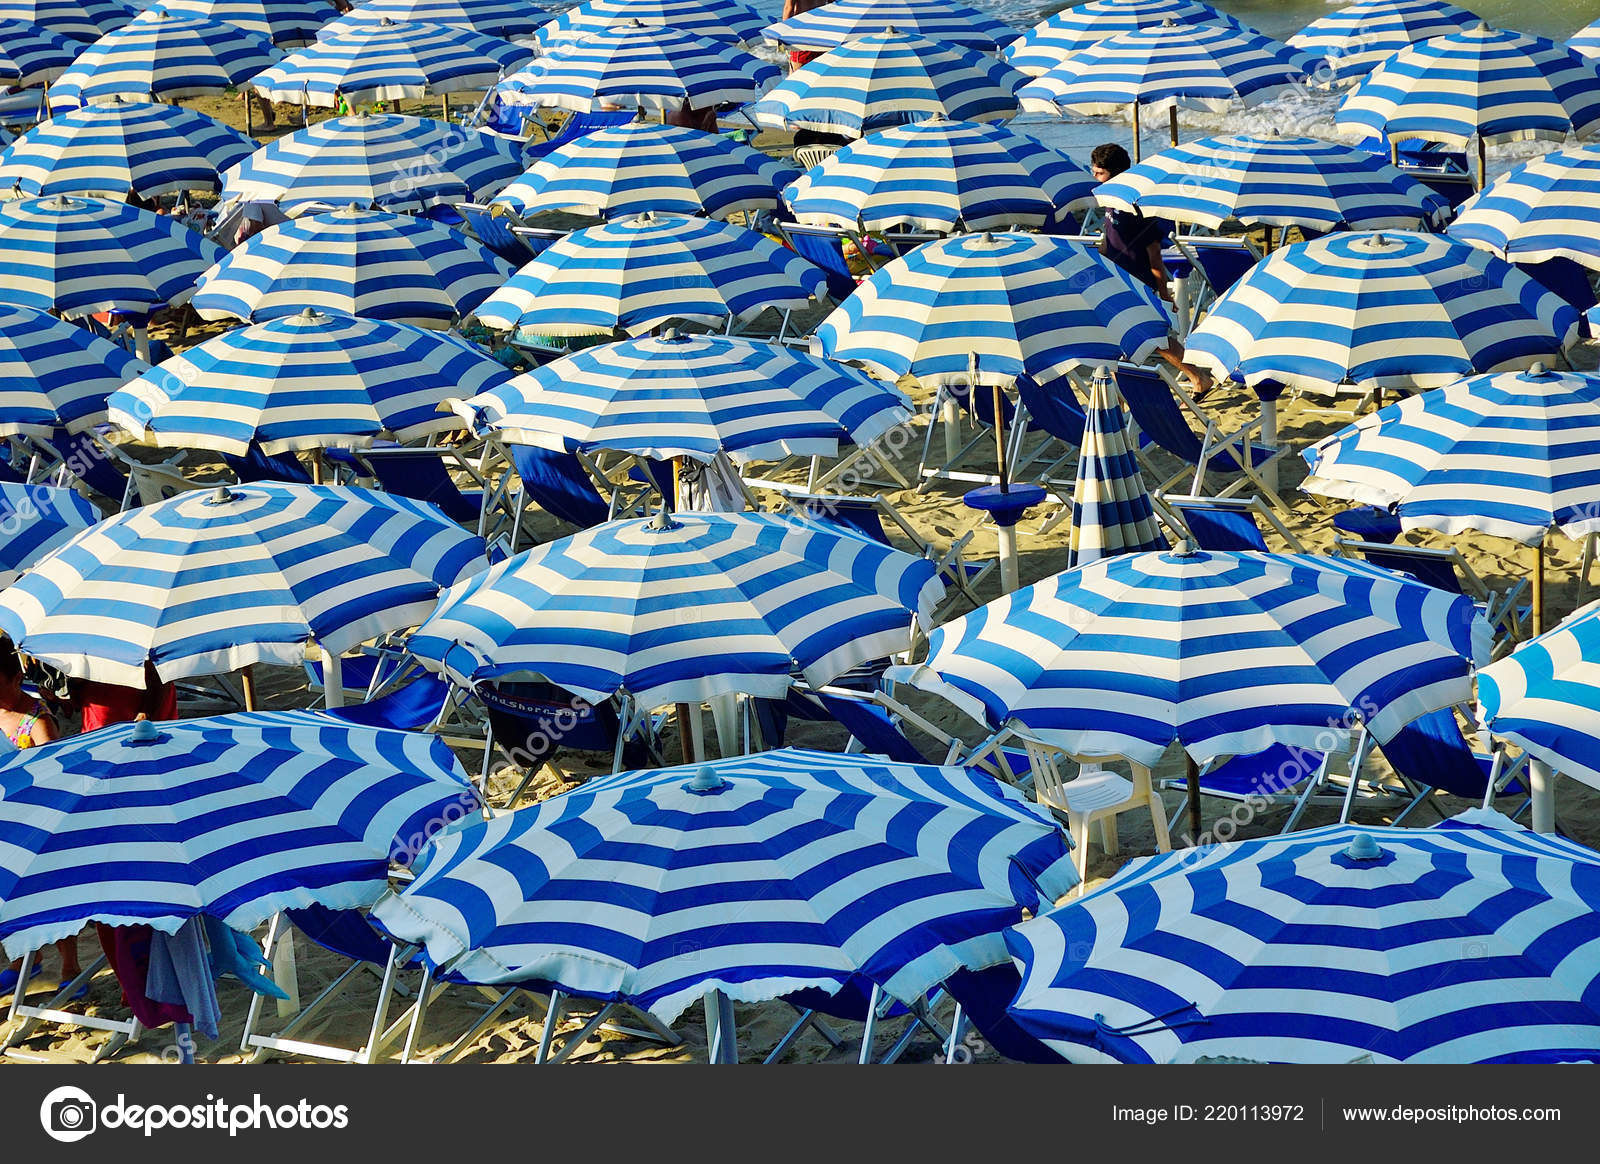 depositphotos_220113972-stock-photo-blue-white-umbrellas-montesilvano-beach.jpg